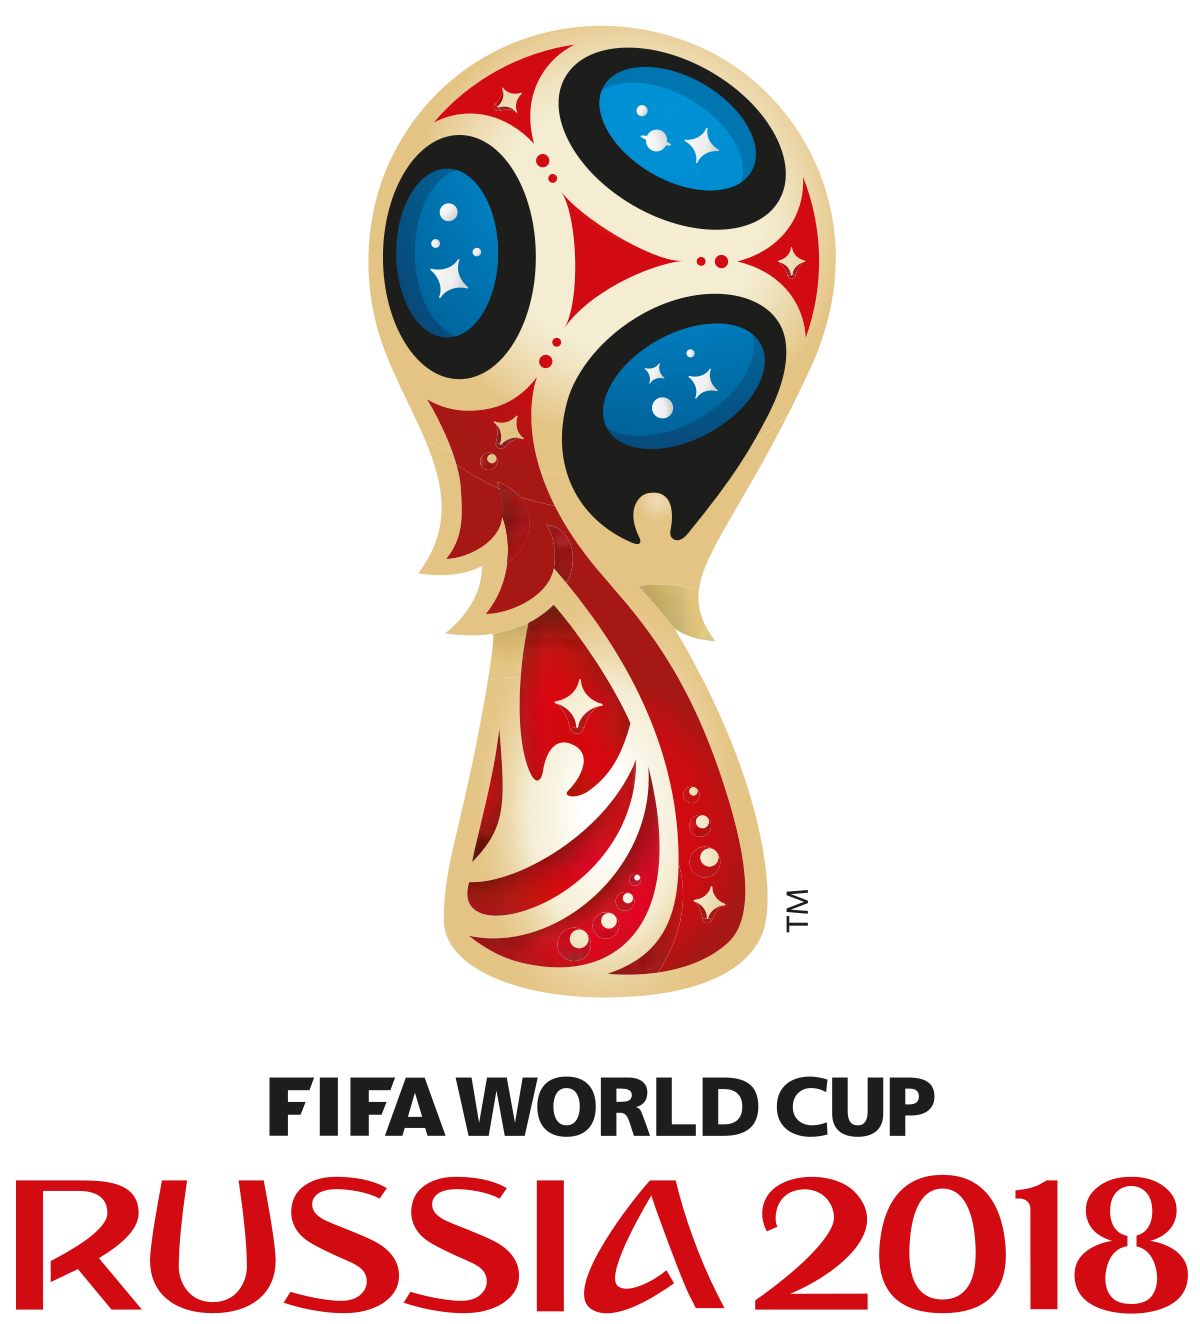 Piala Dunia 2018 Png - KibrisPDR